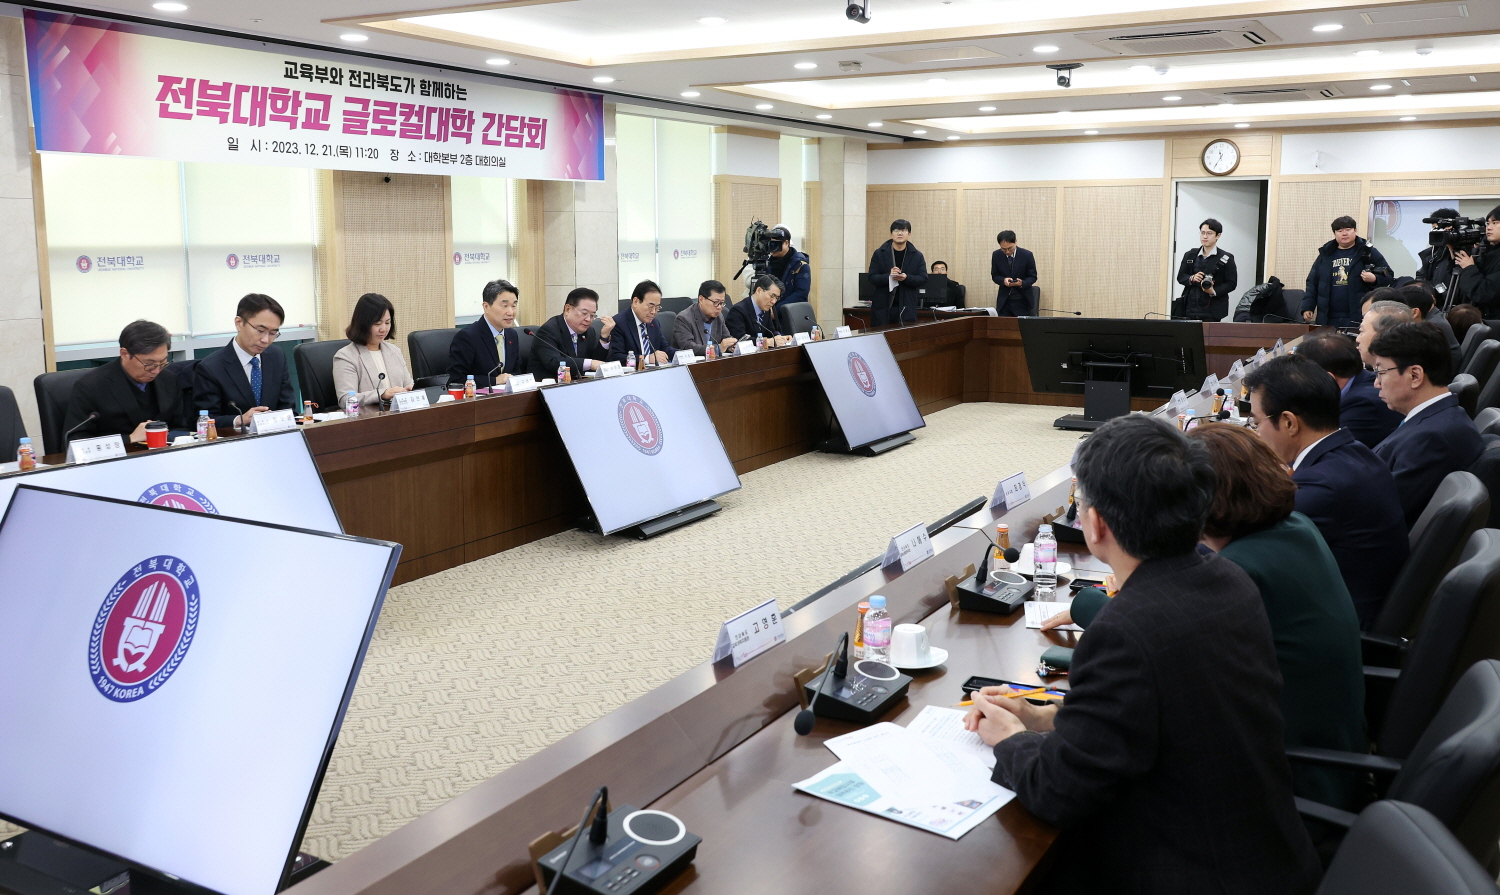 이주호 부총리 겸 교육부 장관은 전북대학교 대학본부에서 개최되는 글로컬대학 간담회에 참석